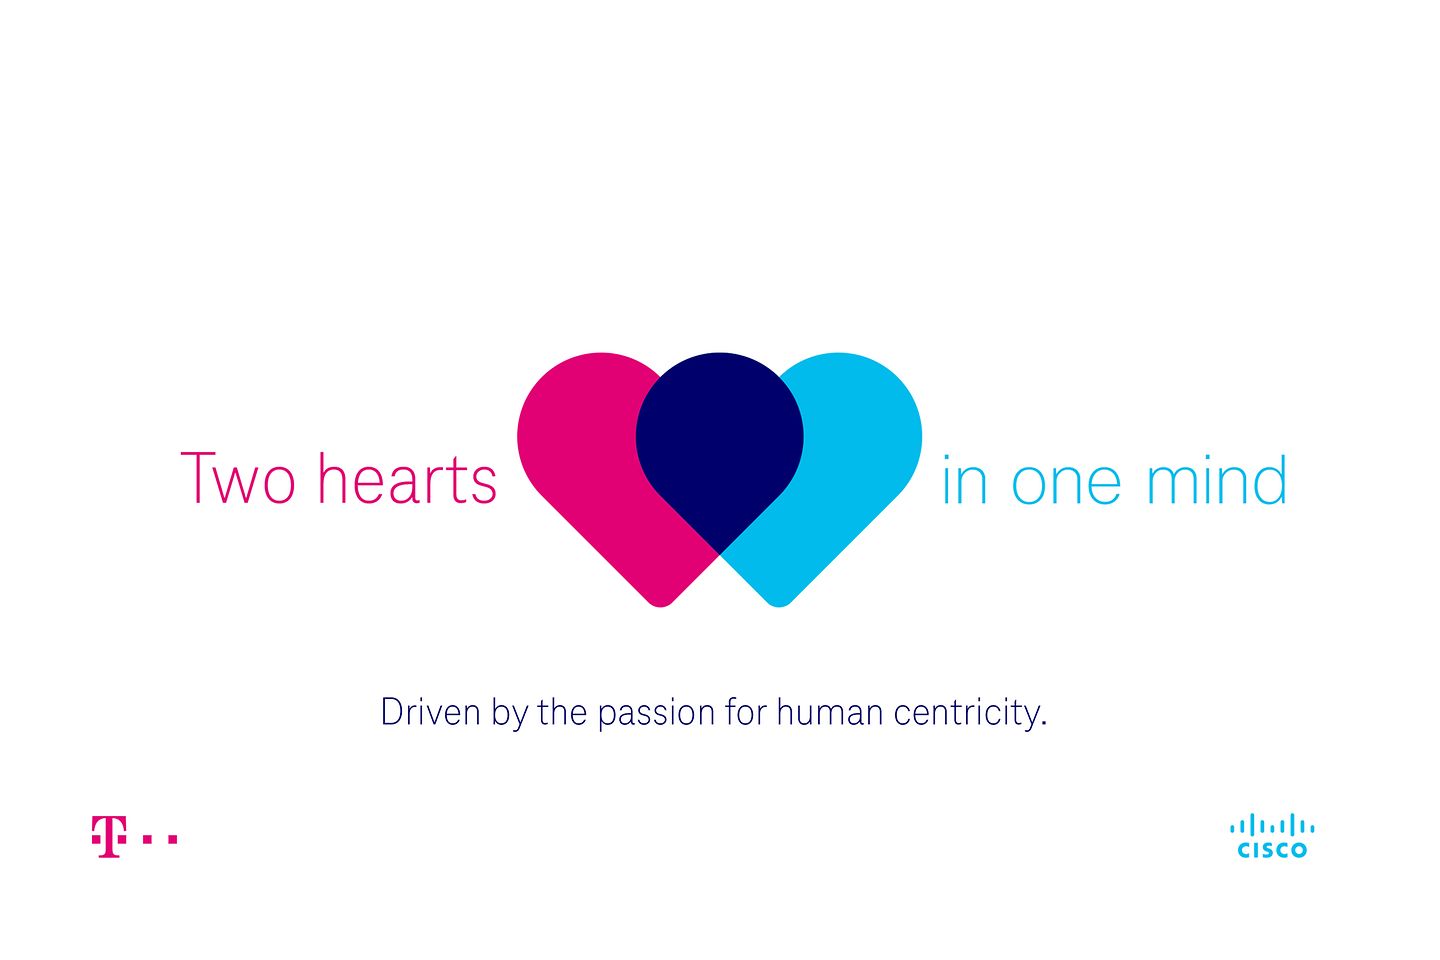 Rechts: Twee kloppende harten, links: Een unieke samenwerking, daaronder: Onze passie is jouw succes